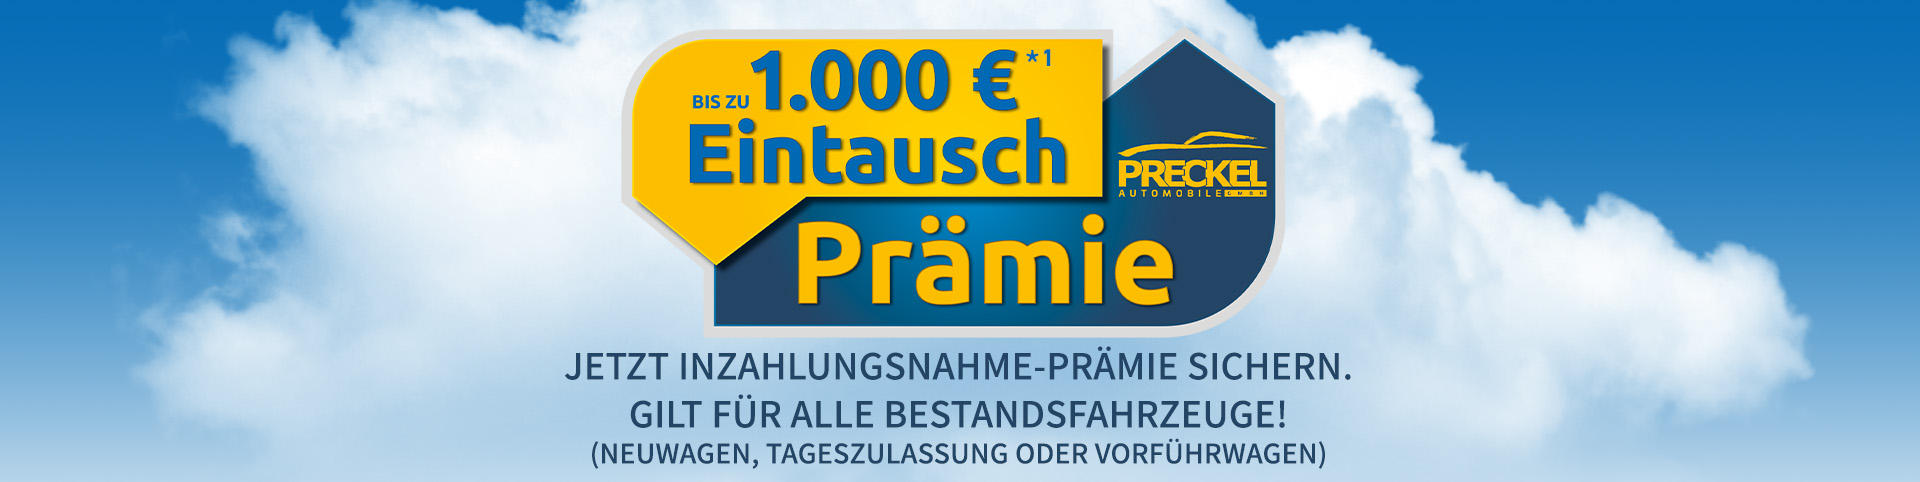 Inzahlungsnahme-Prämie bei Preckel Automobile jetzt nutzen!